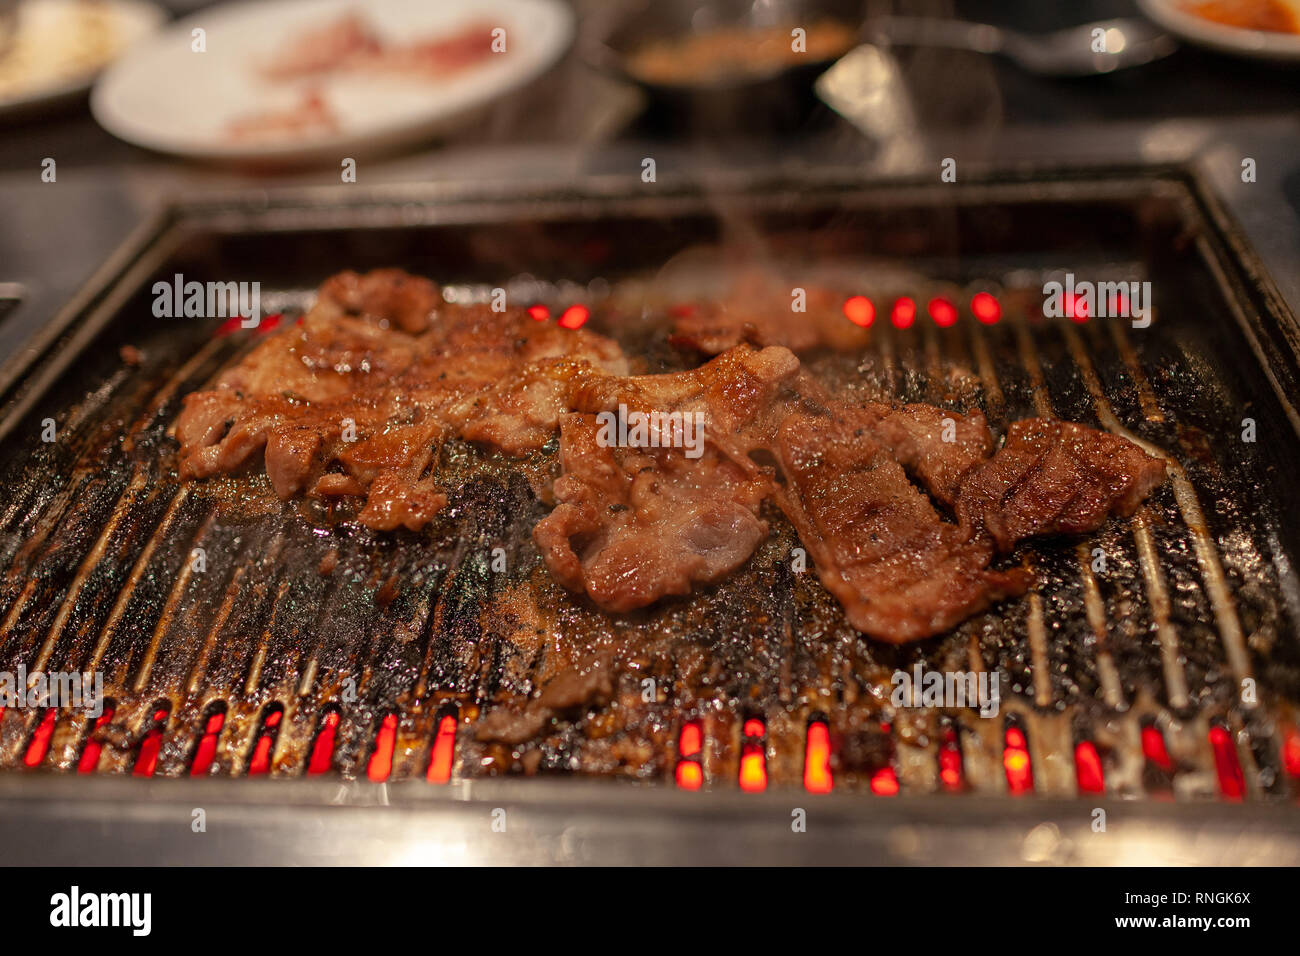 Korean style barbecue avec le boeuf mariné juteux sur la plaque chaude avec de la fumée de cuisson émettant. Banque D'Images